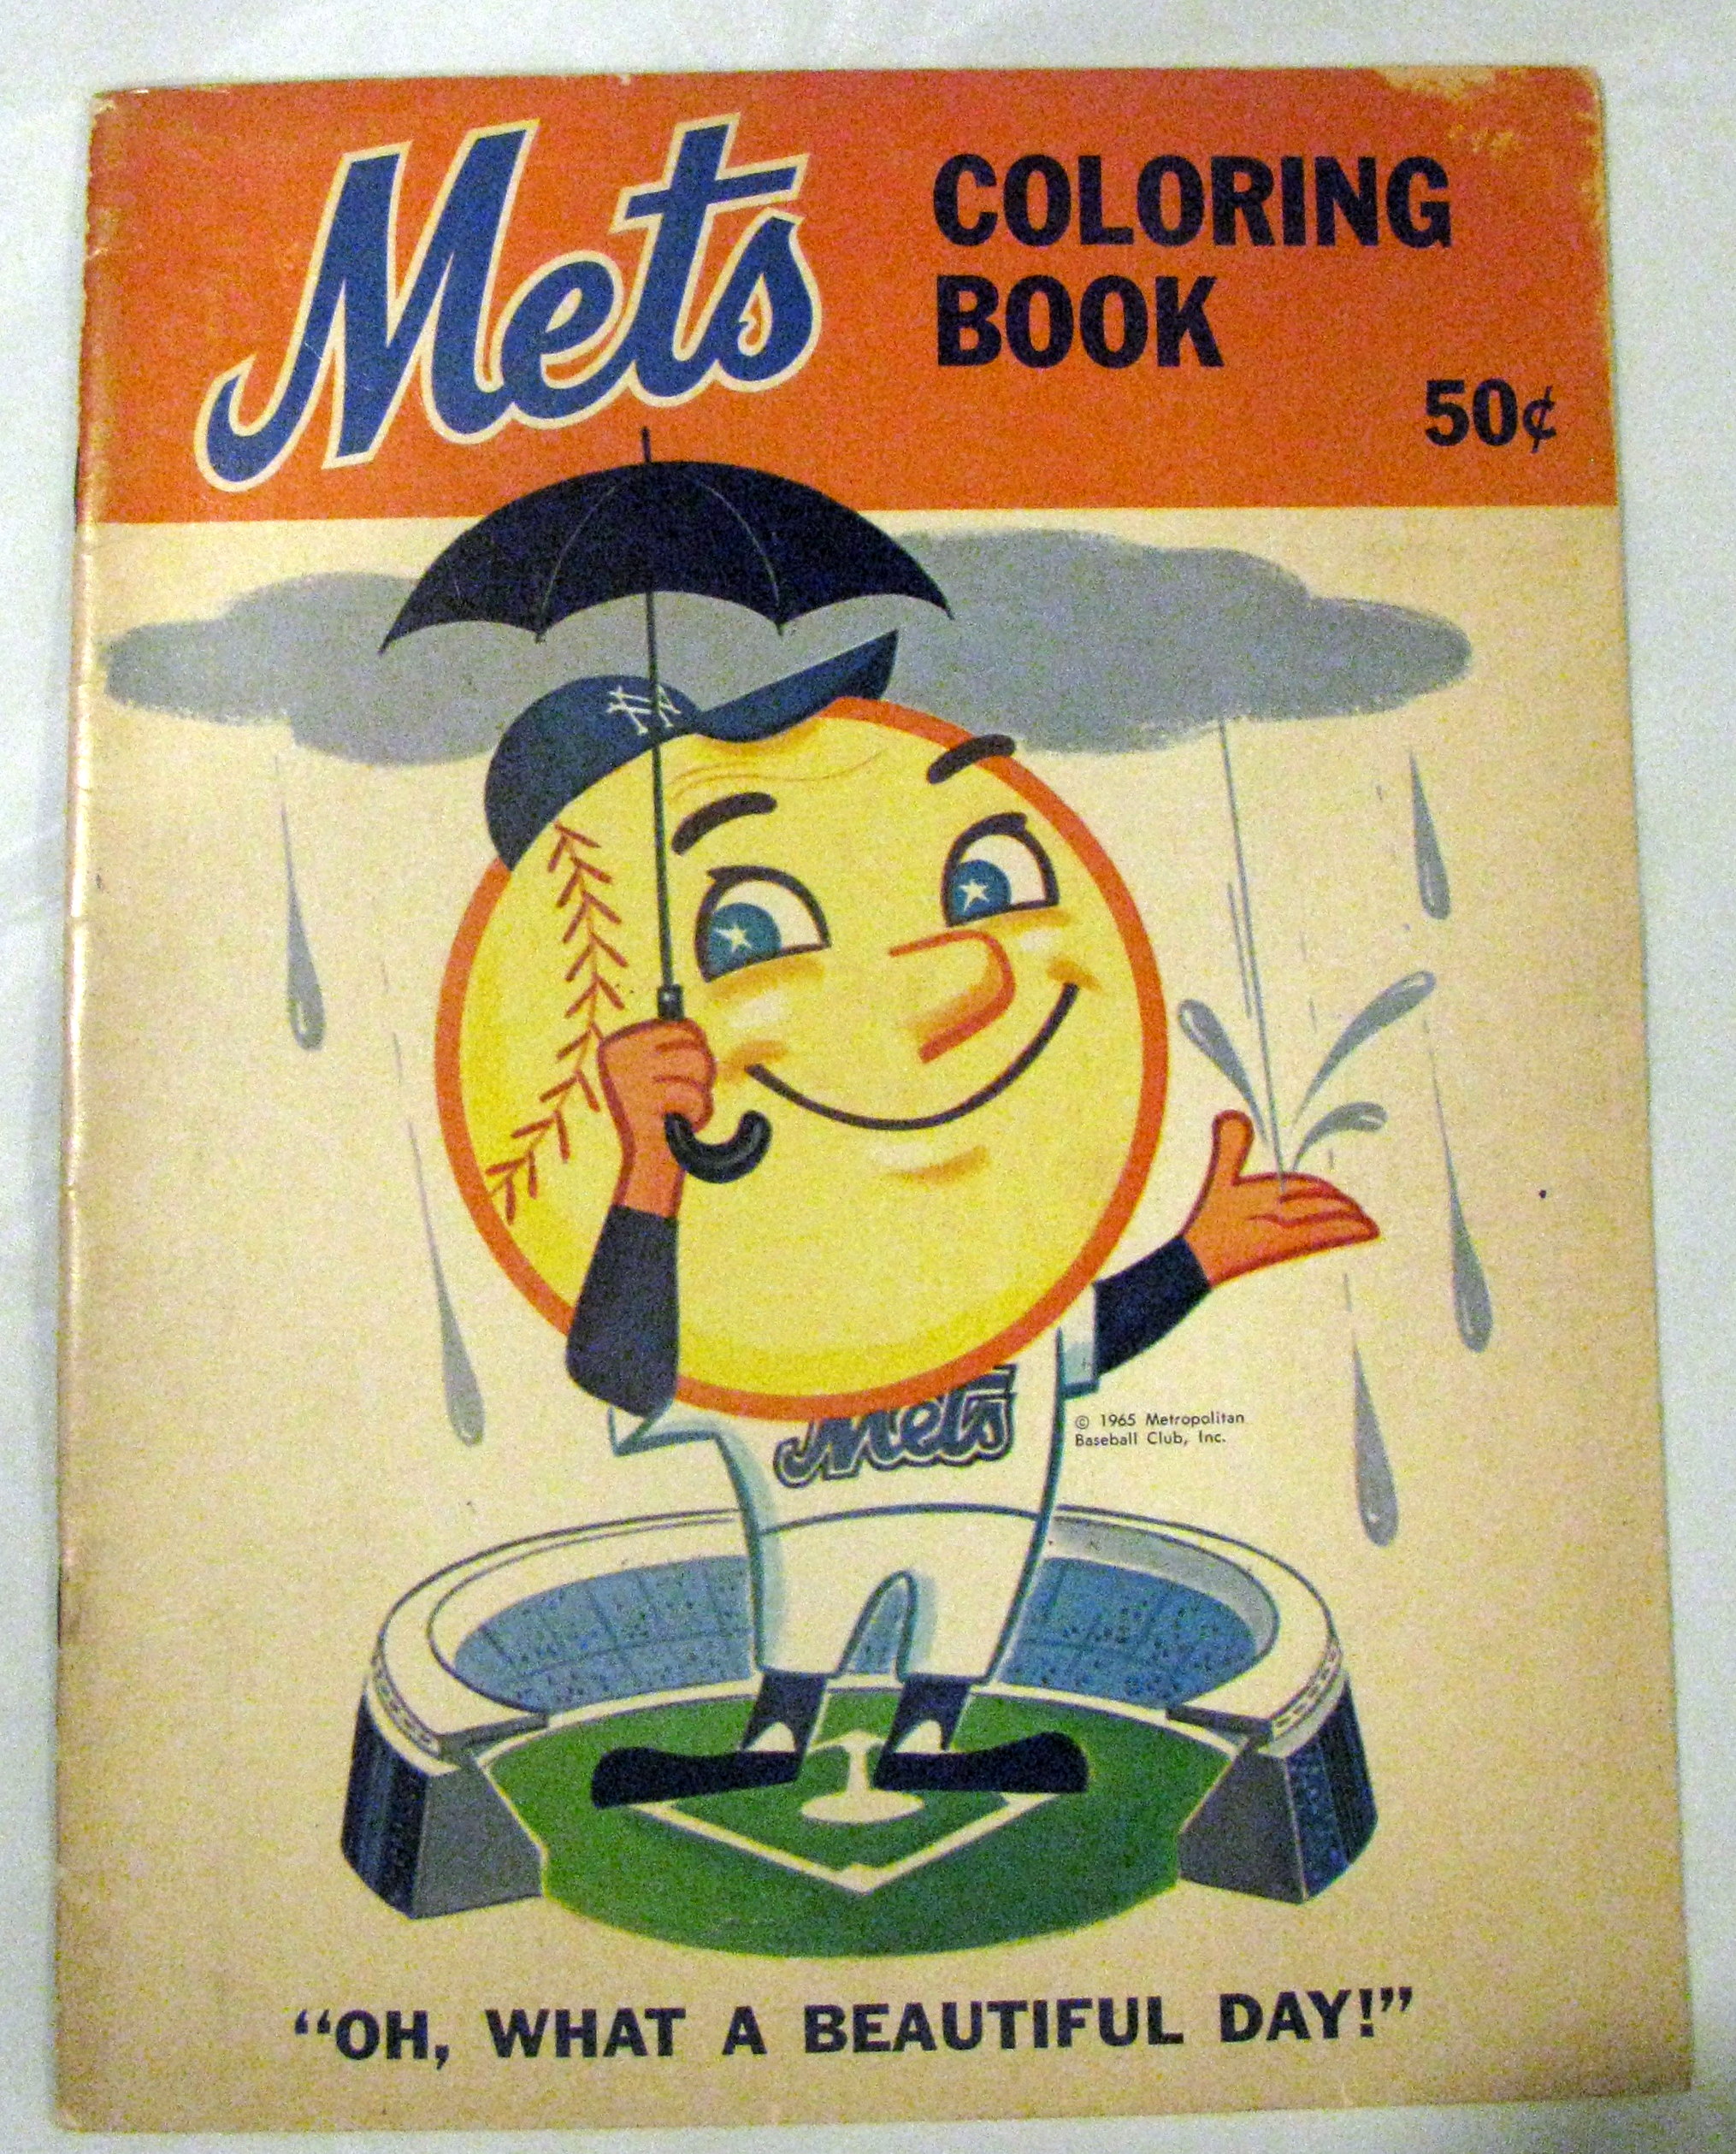 Old Mr. Met Coloring Book